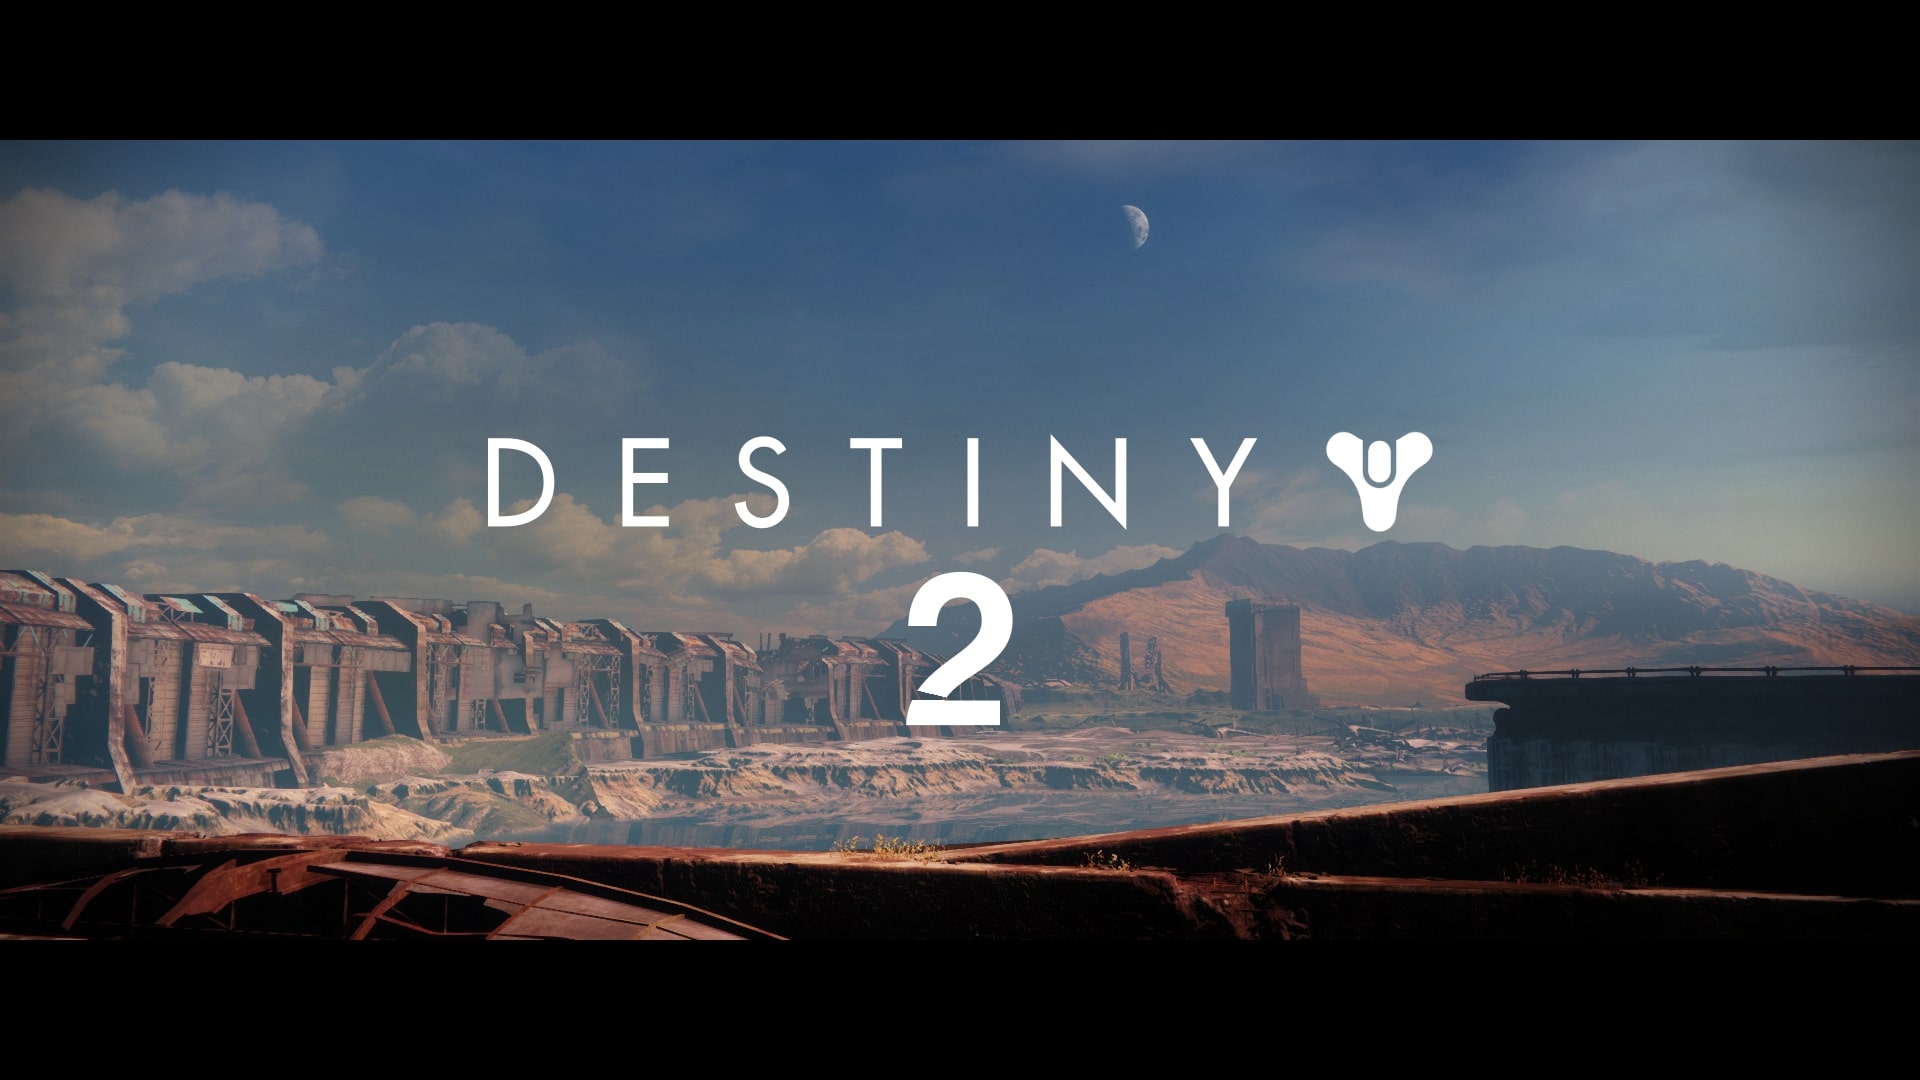 Destiny 2 title